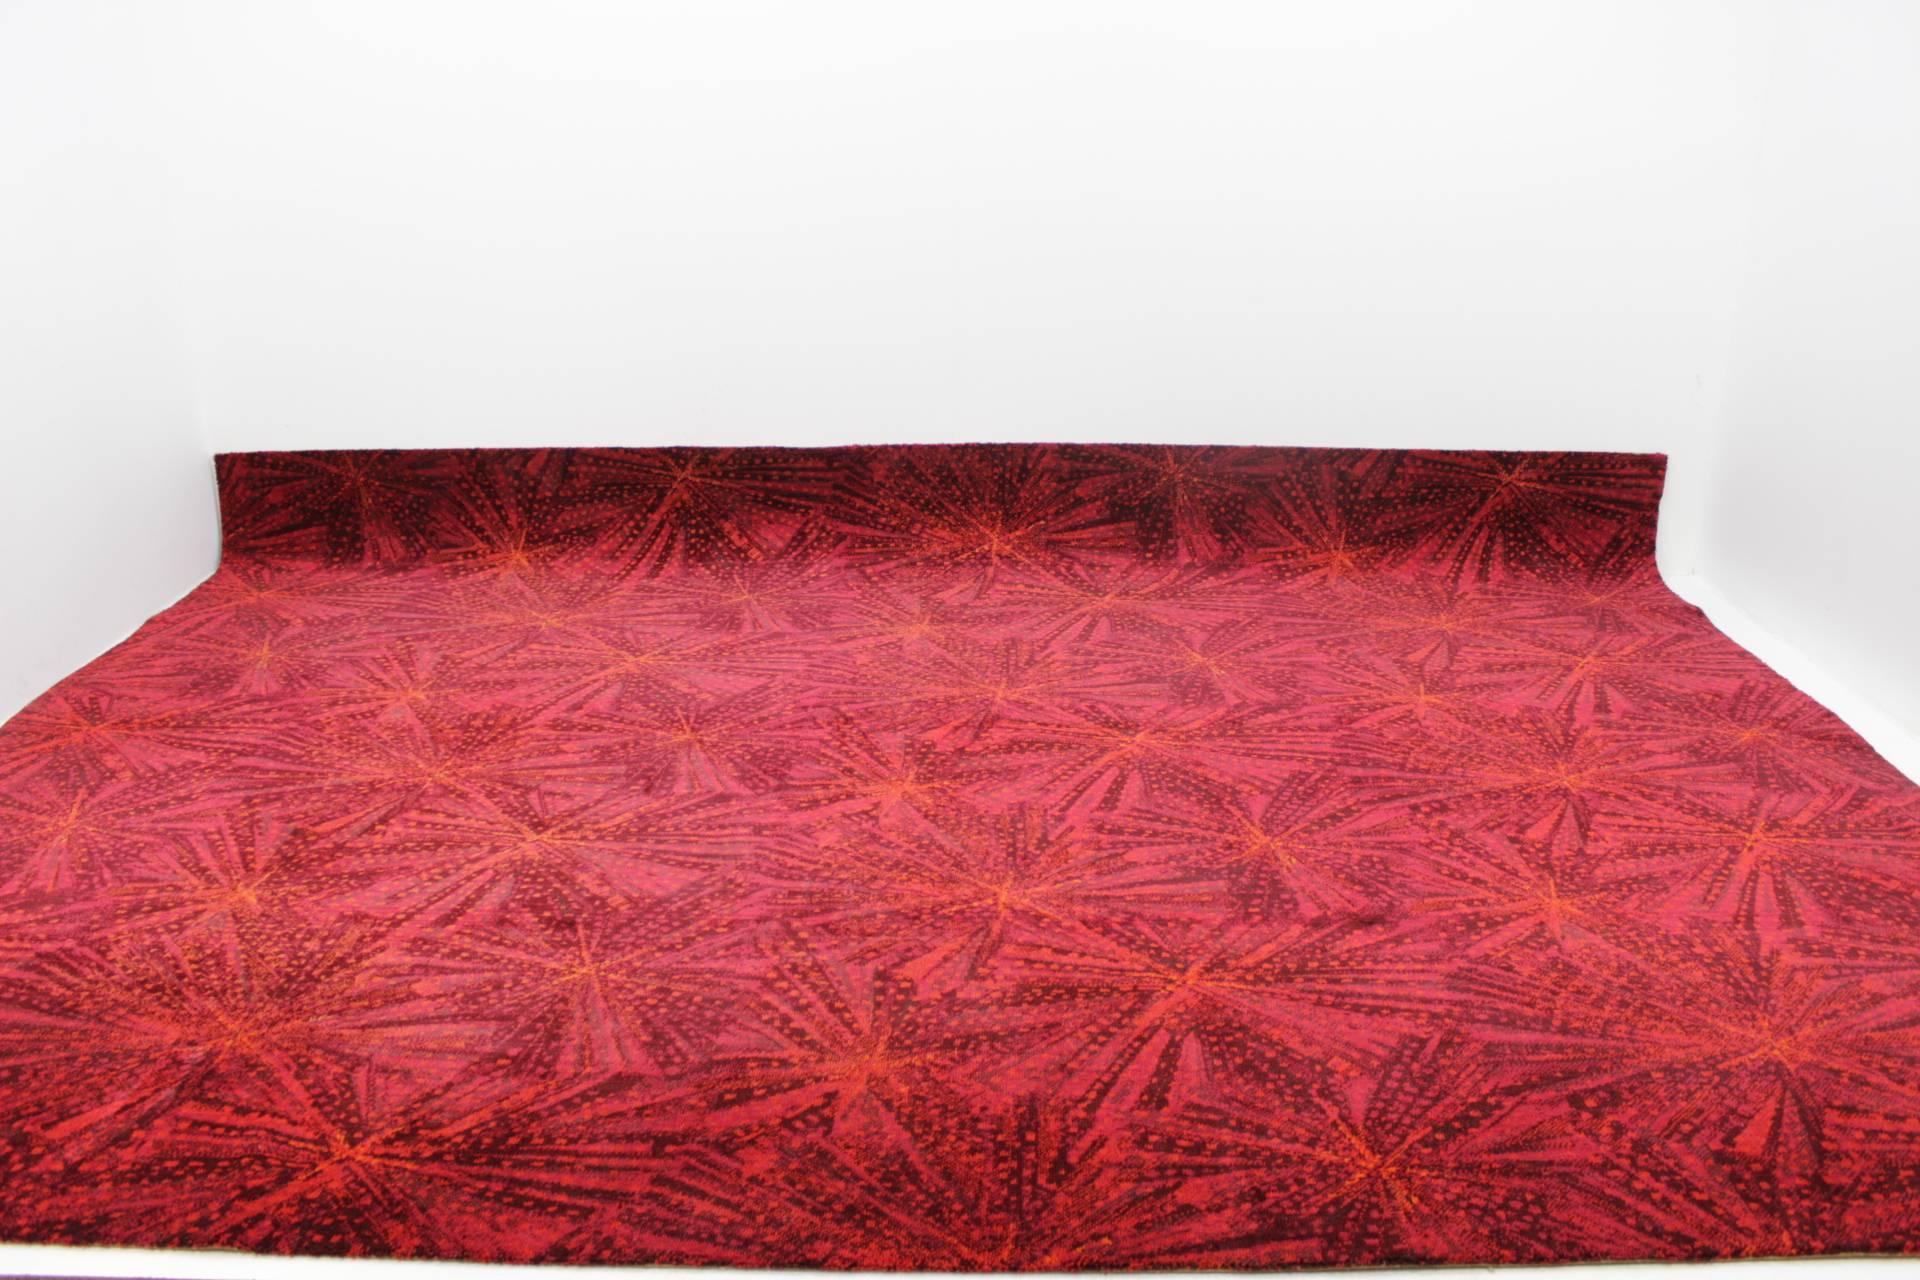 Czech Stunning Huge Geometric Carpet by A. Ambrossová, 1967 For Sale